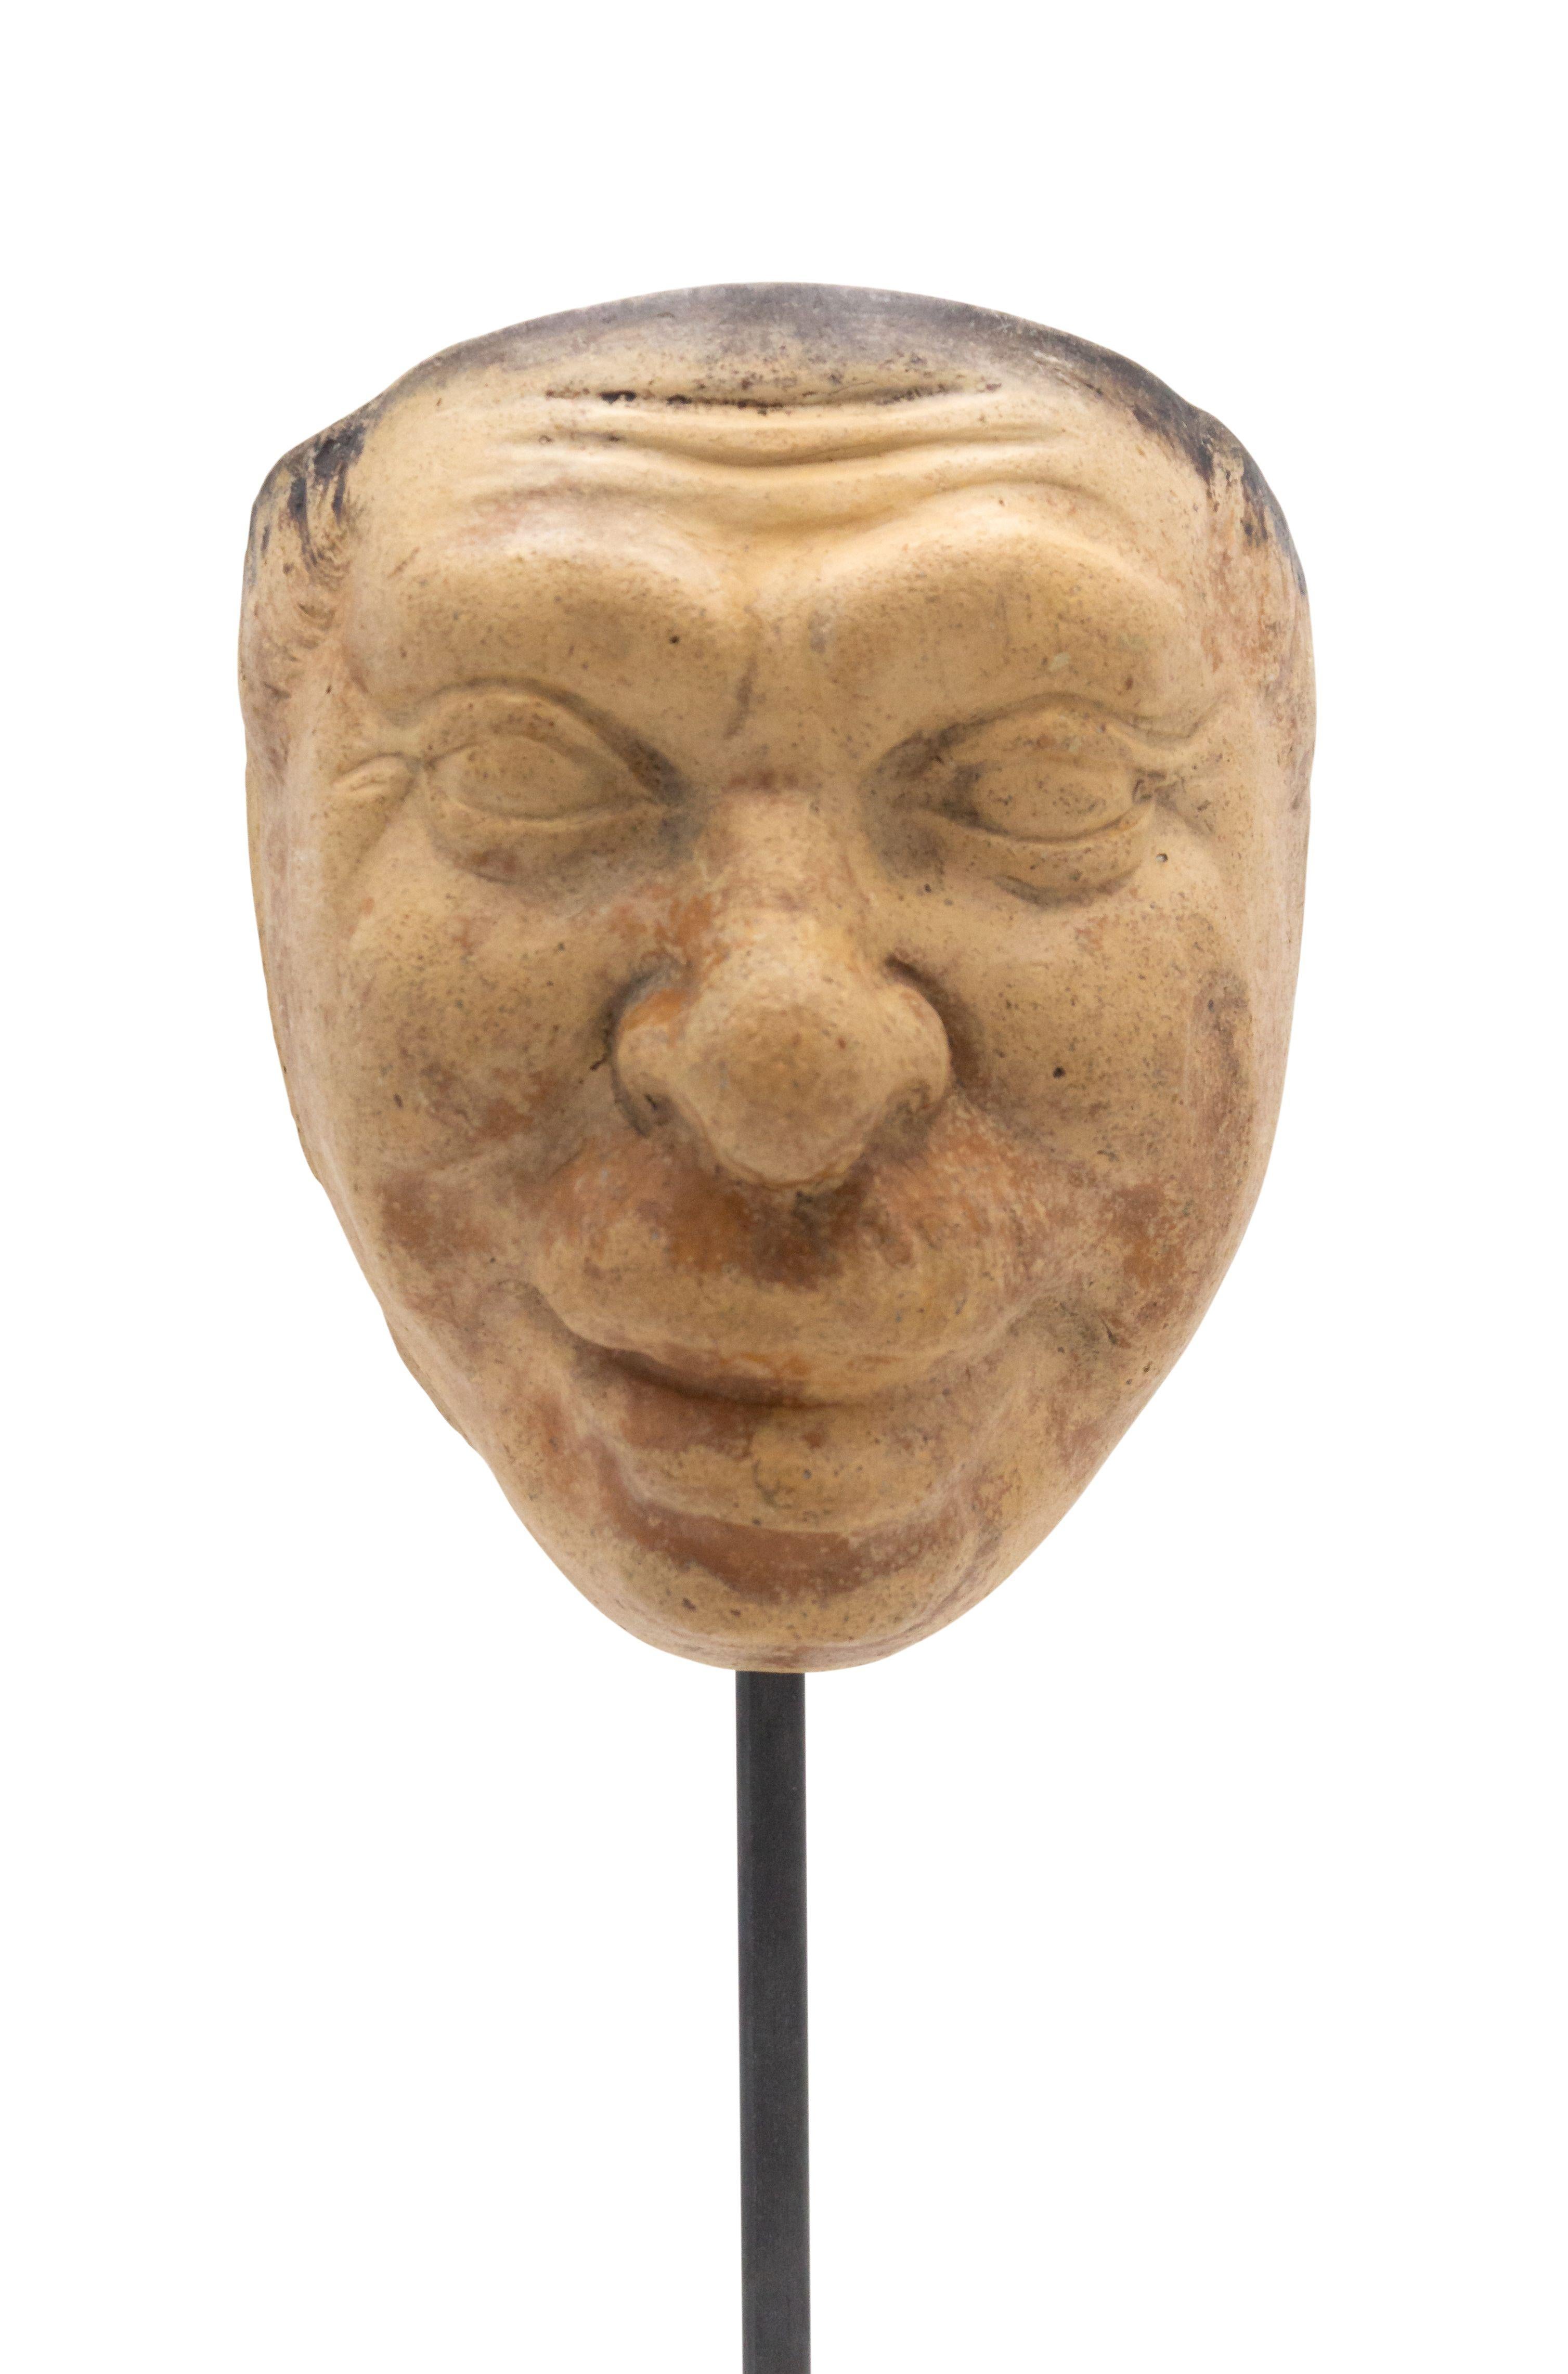 Masque de maître en terre cuite sculpté en Allemagne continentale (fin du 19e siècle) représentant un visage grotesque souriant avec une moustache, présenté sur une base carrée en marbre noir (fait partie d'un ensemble de 39 pièces).